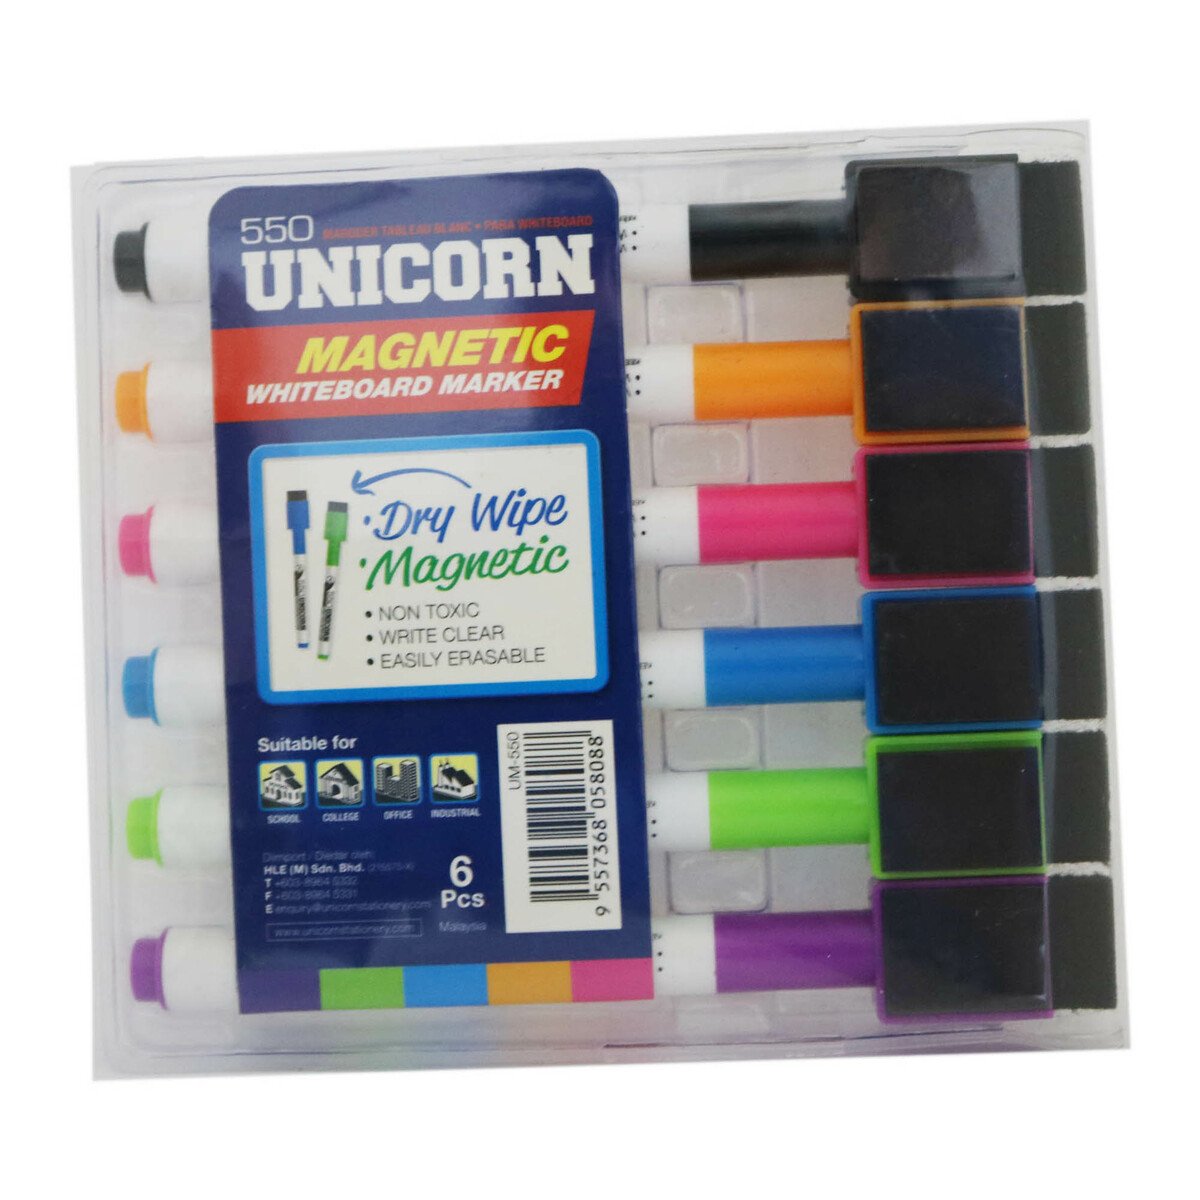 Unicorn Marker Um-550 6pcs